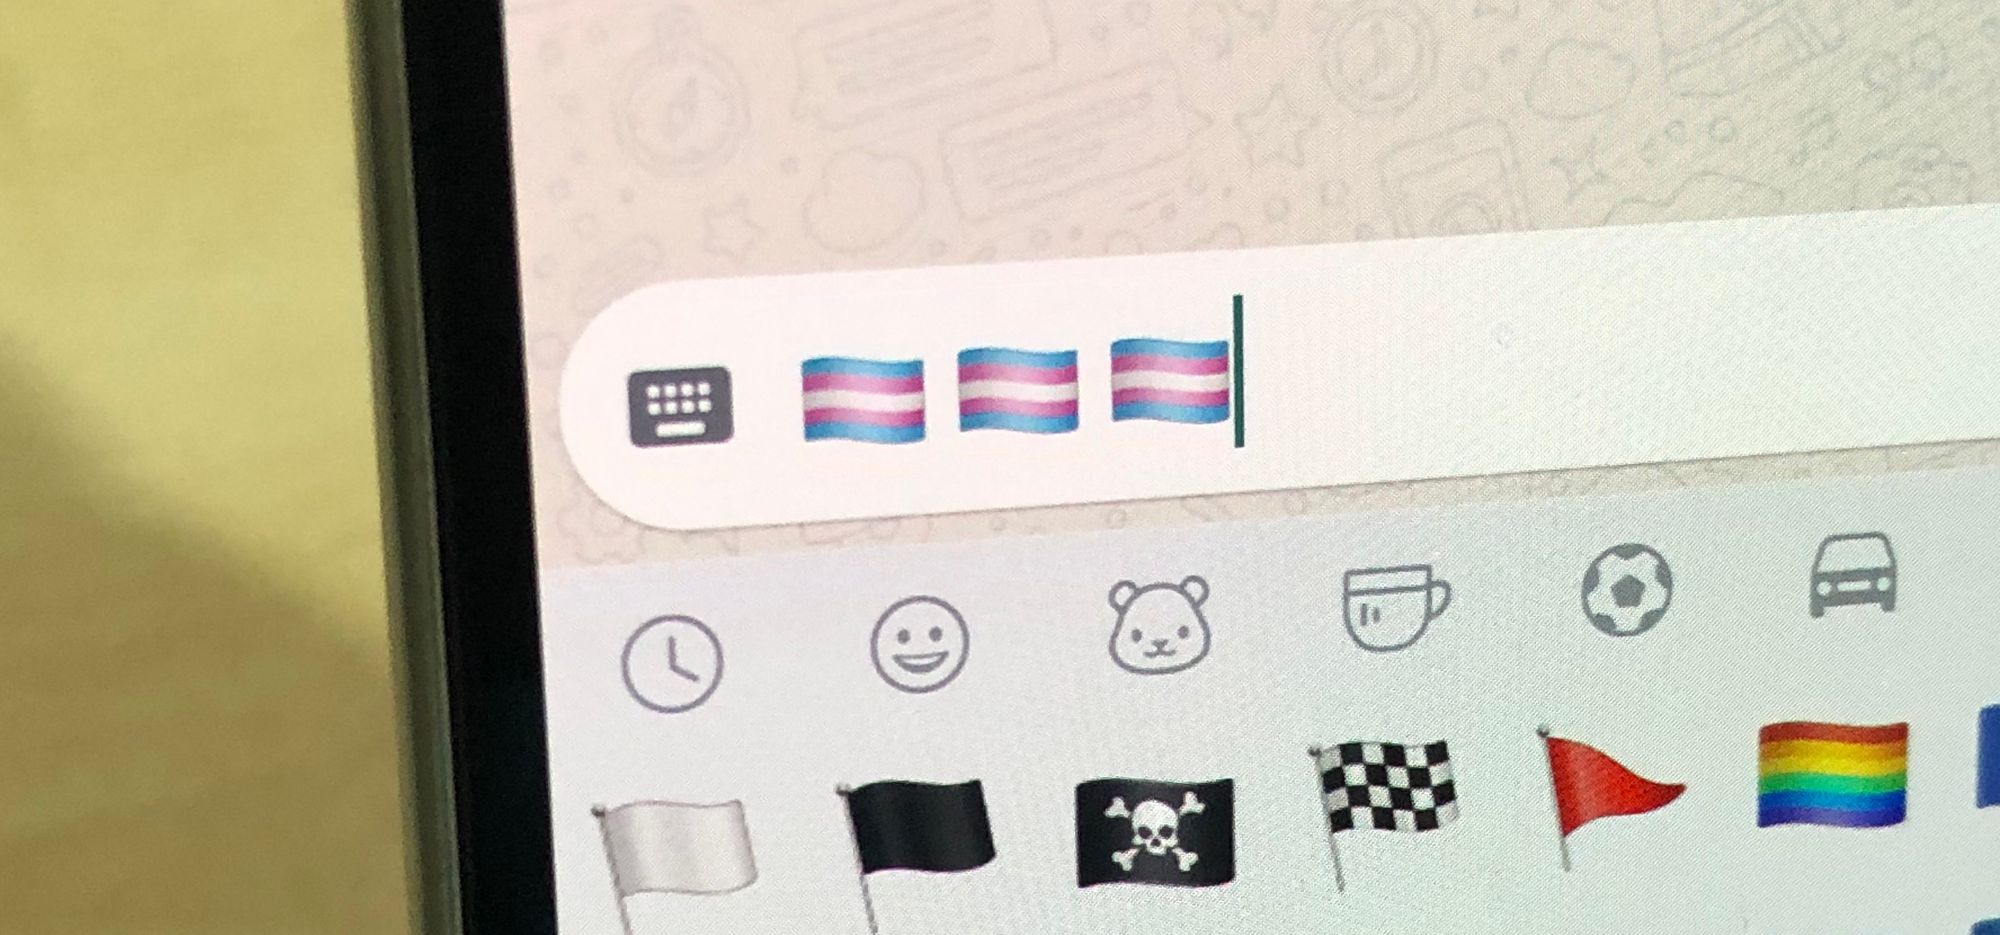 🏳️‍⚧️ Transgender Flag Emoji